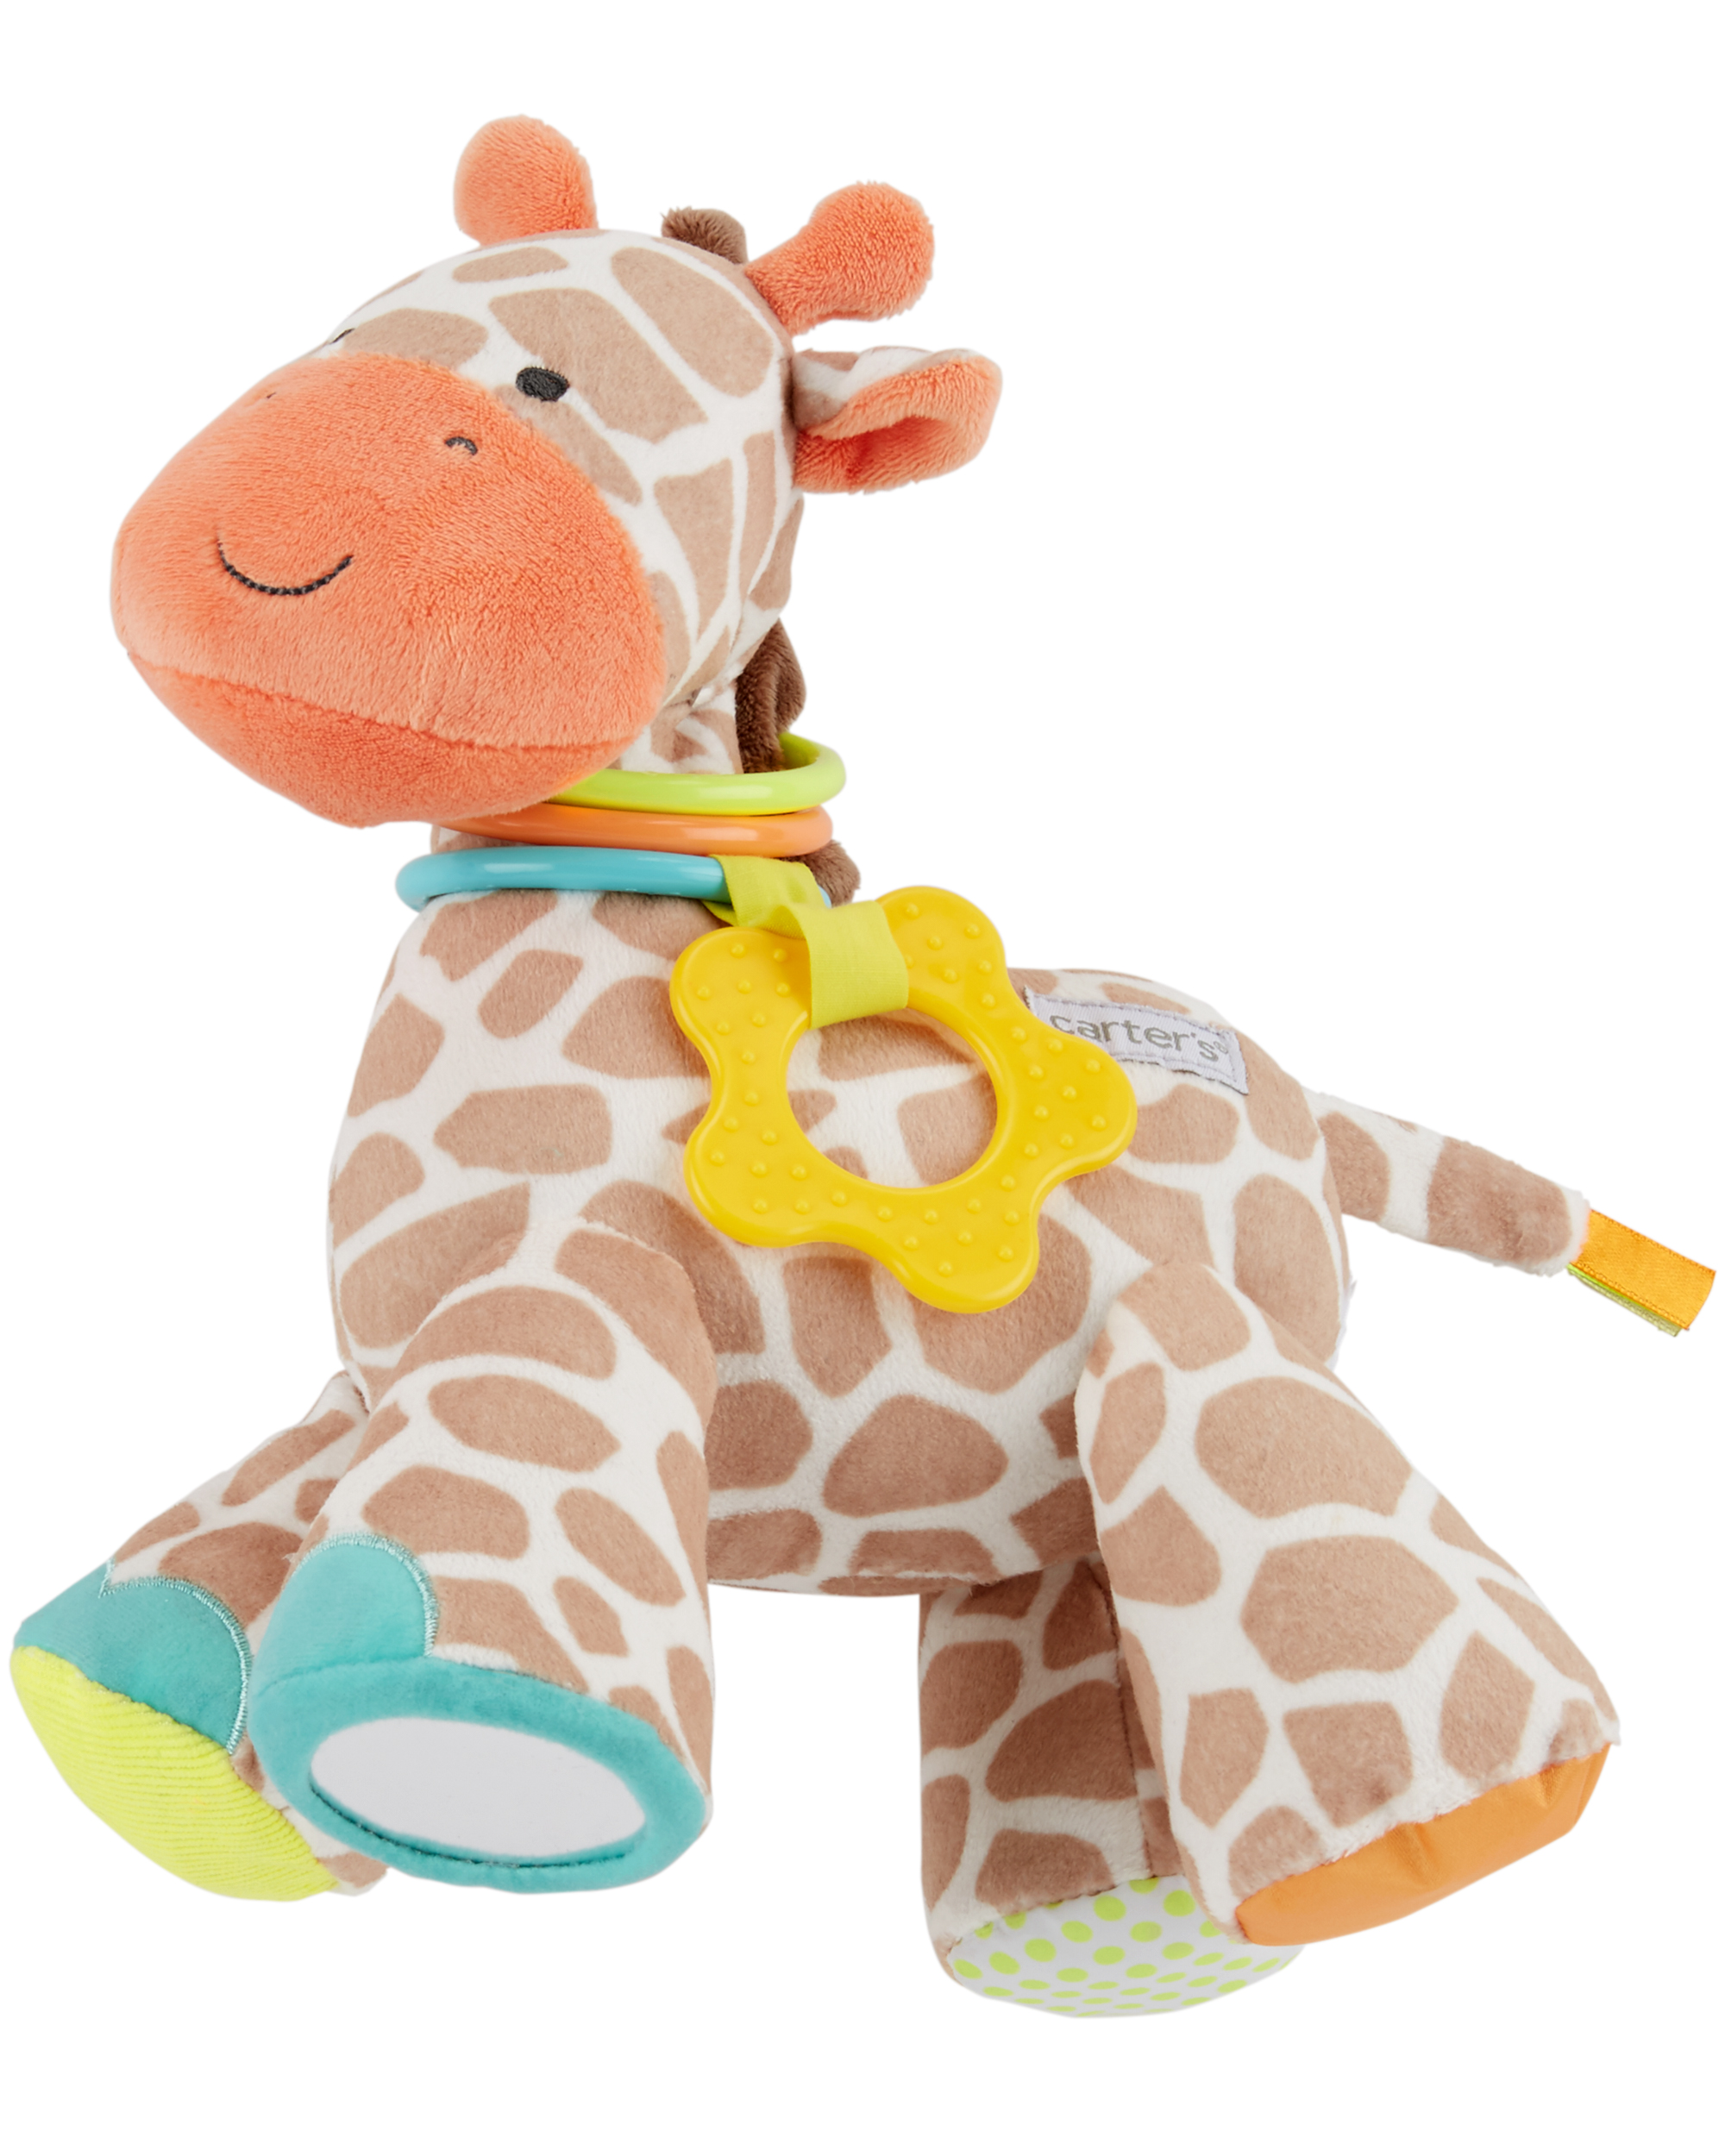 Plush Giraffe Teething Toy